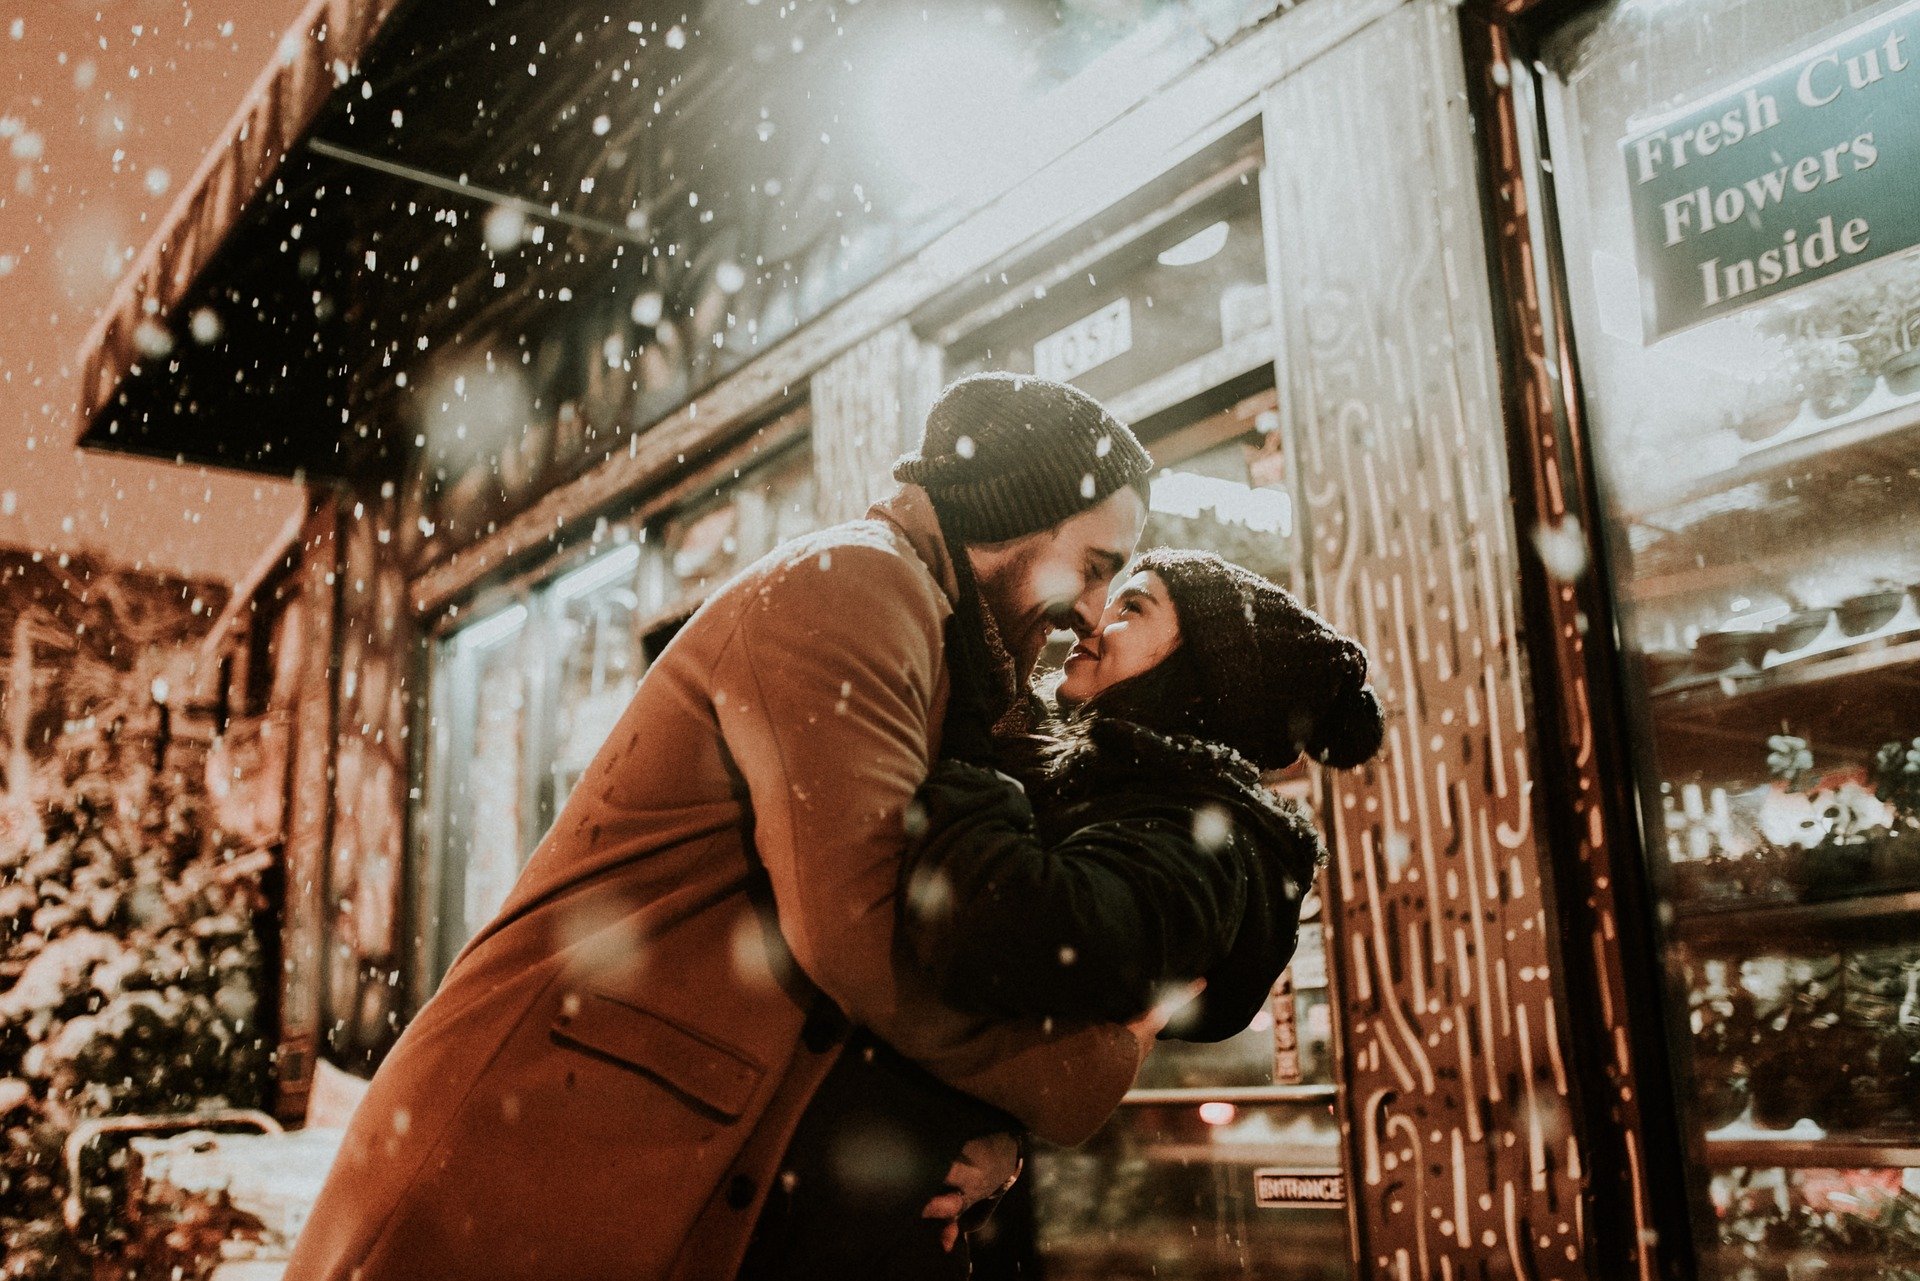 街头店面前 一对<span style='color:red;'>恩爱</span>拥抱的欧美情侣，爱人高清壁纸图片 冬季，下雪天